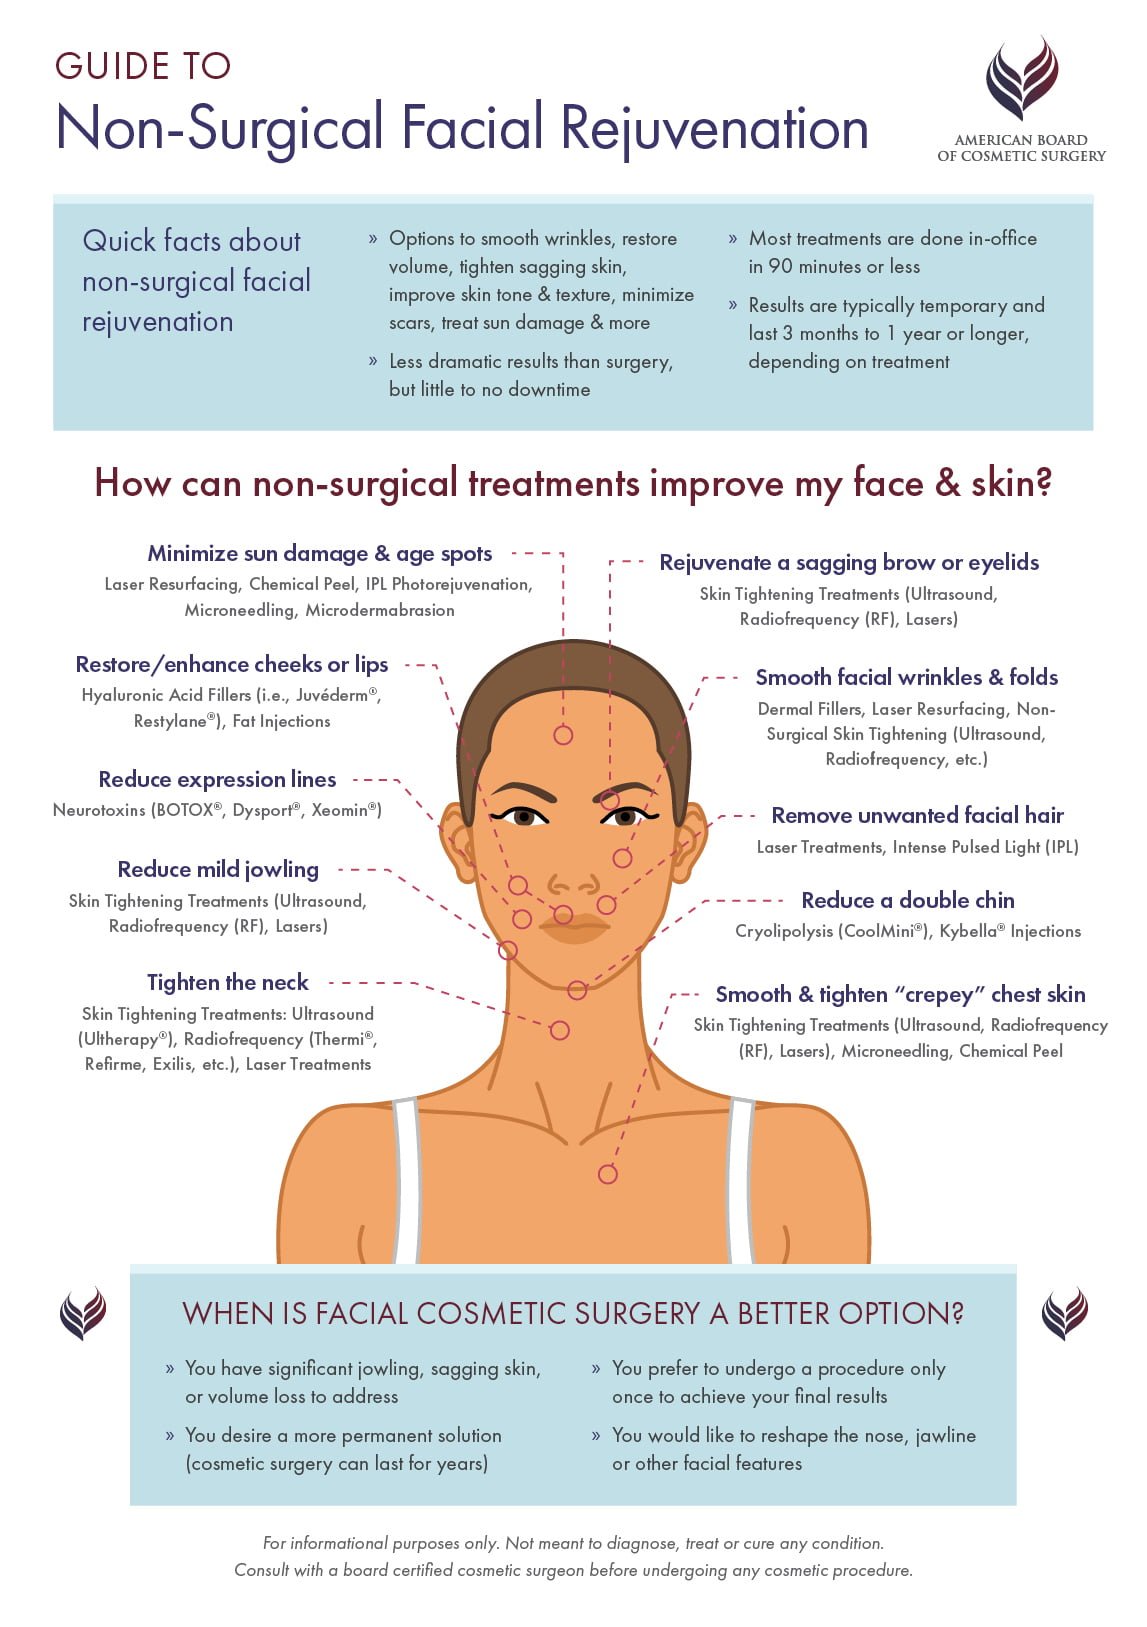 Natural skin rejuvenation methods